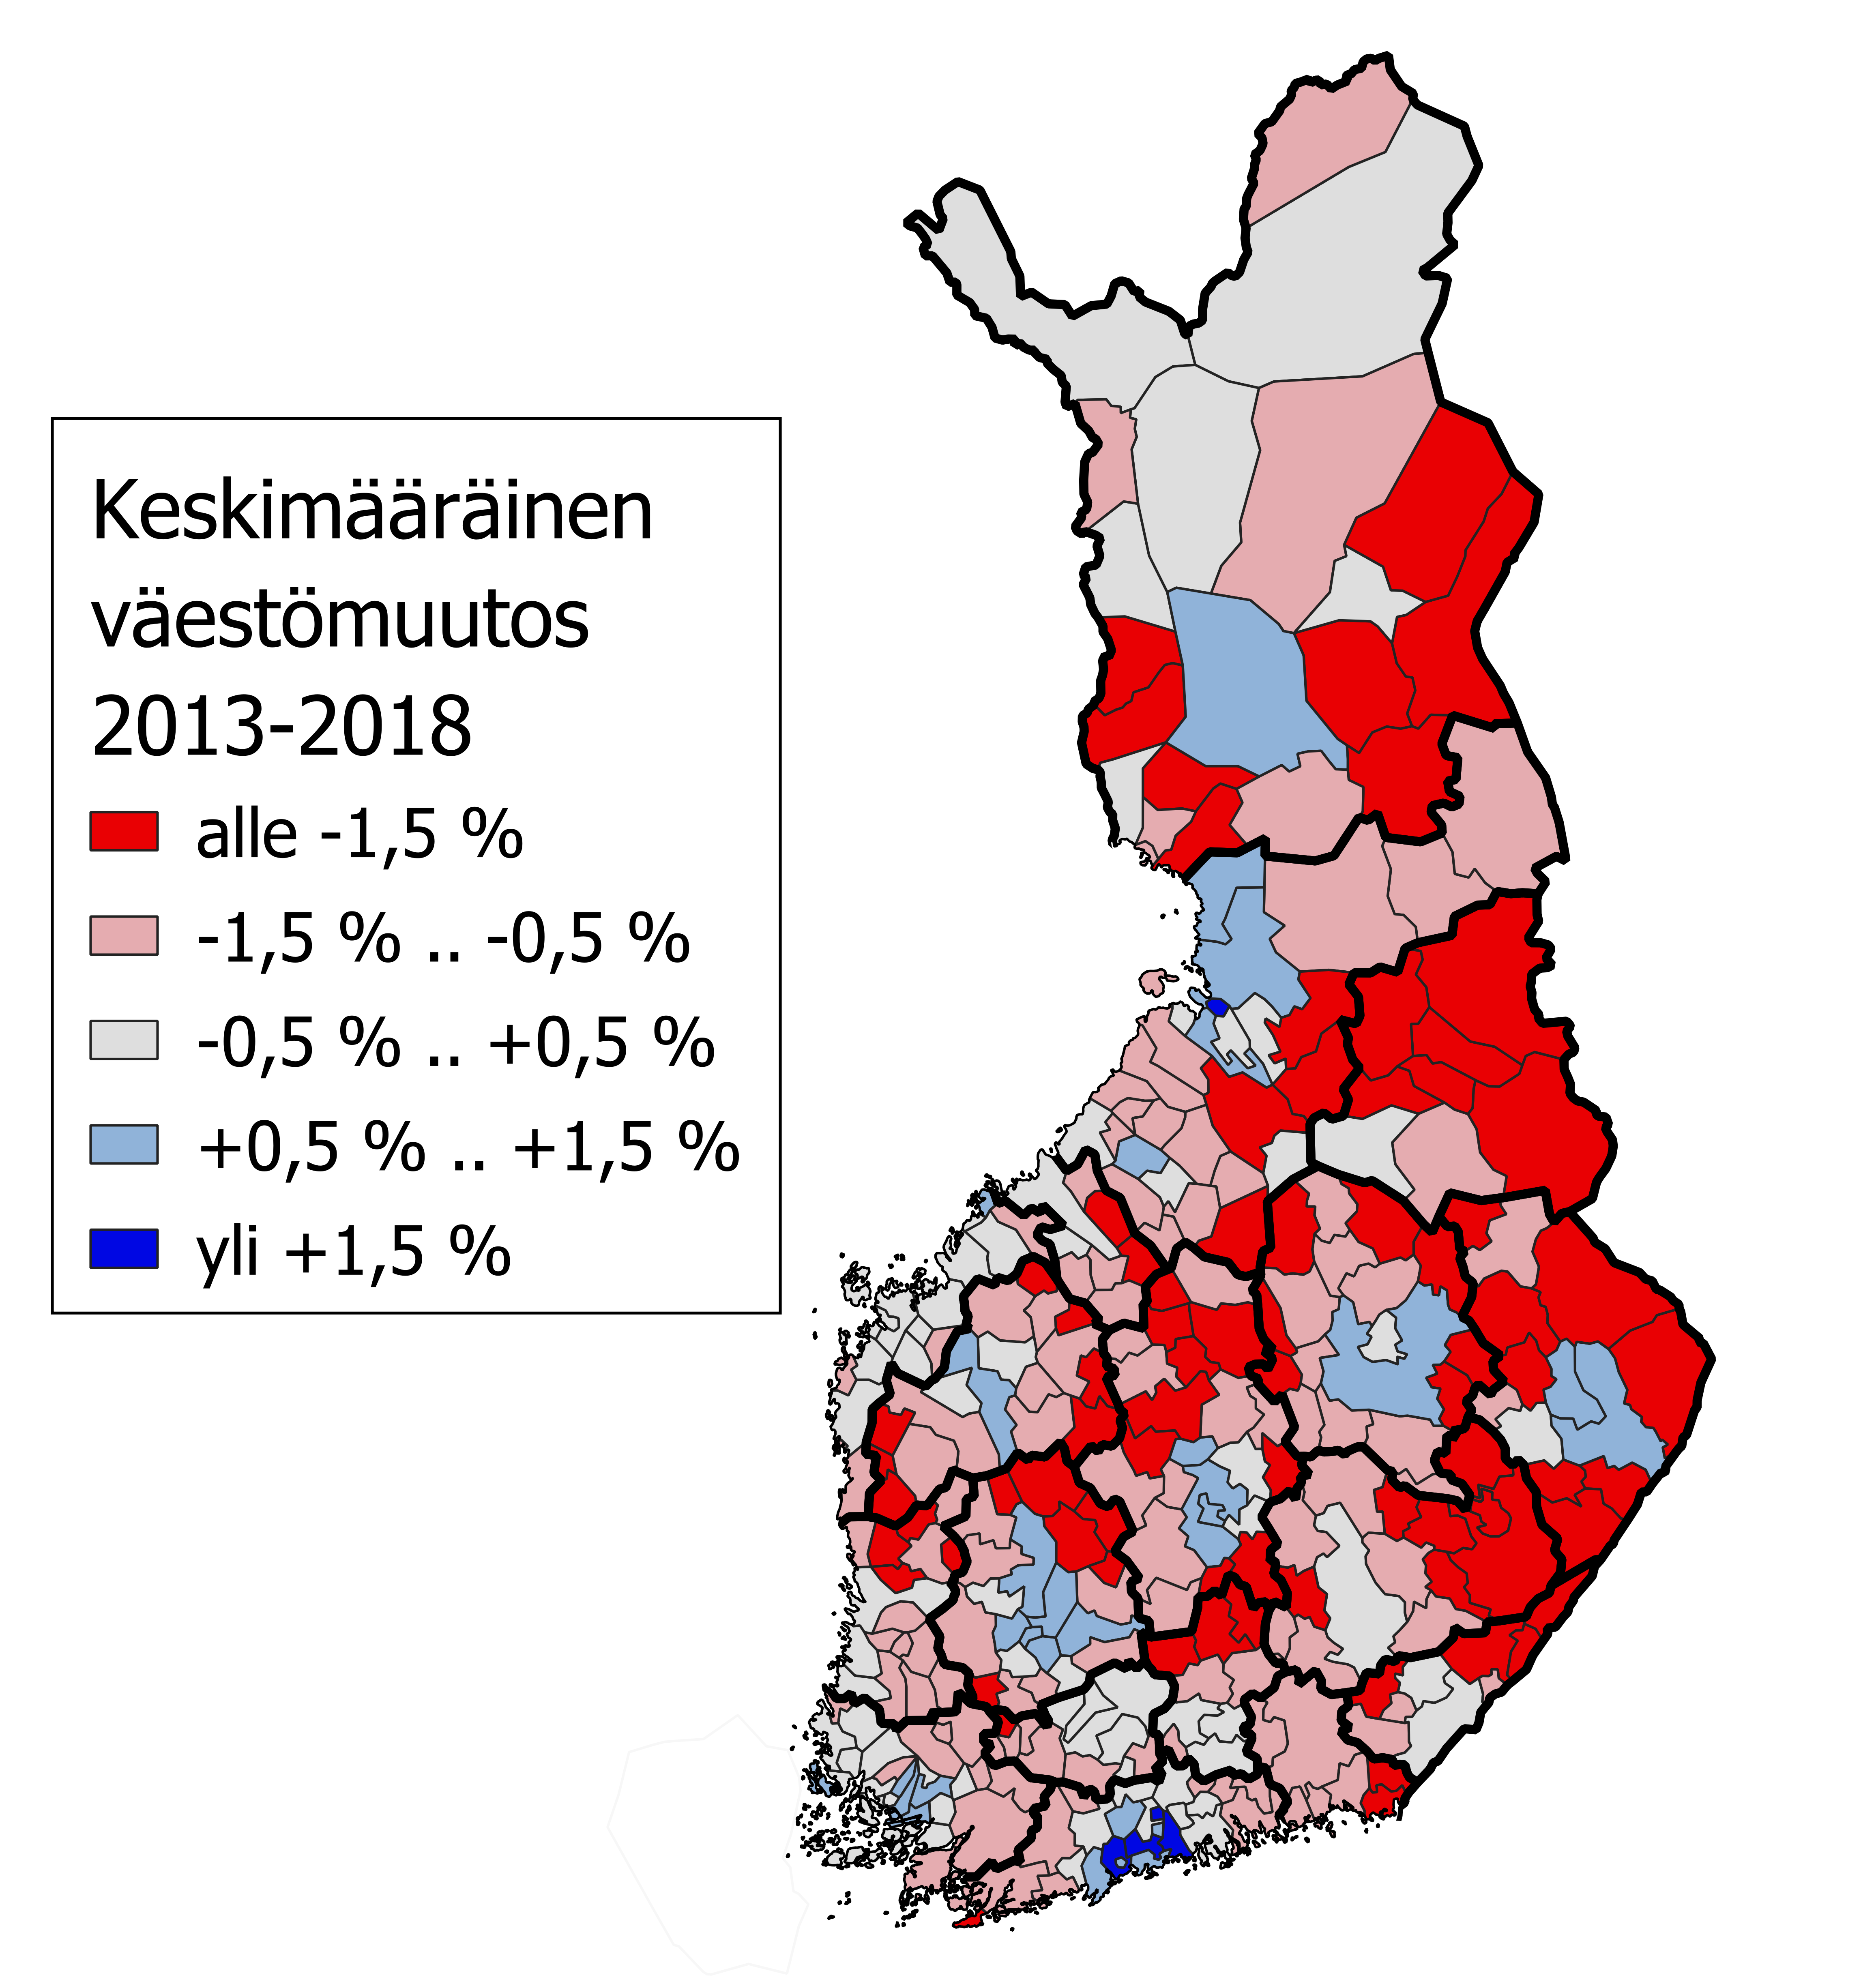 Suomen kartta keskimääräisestä väestömuutoksesta vuosina 2013-2018.